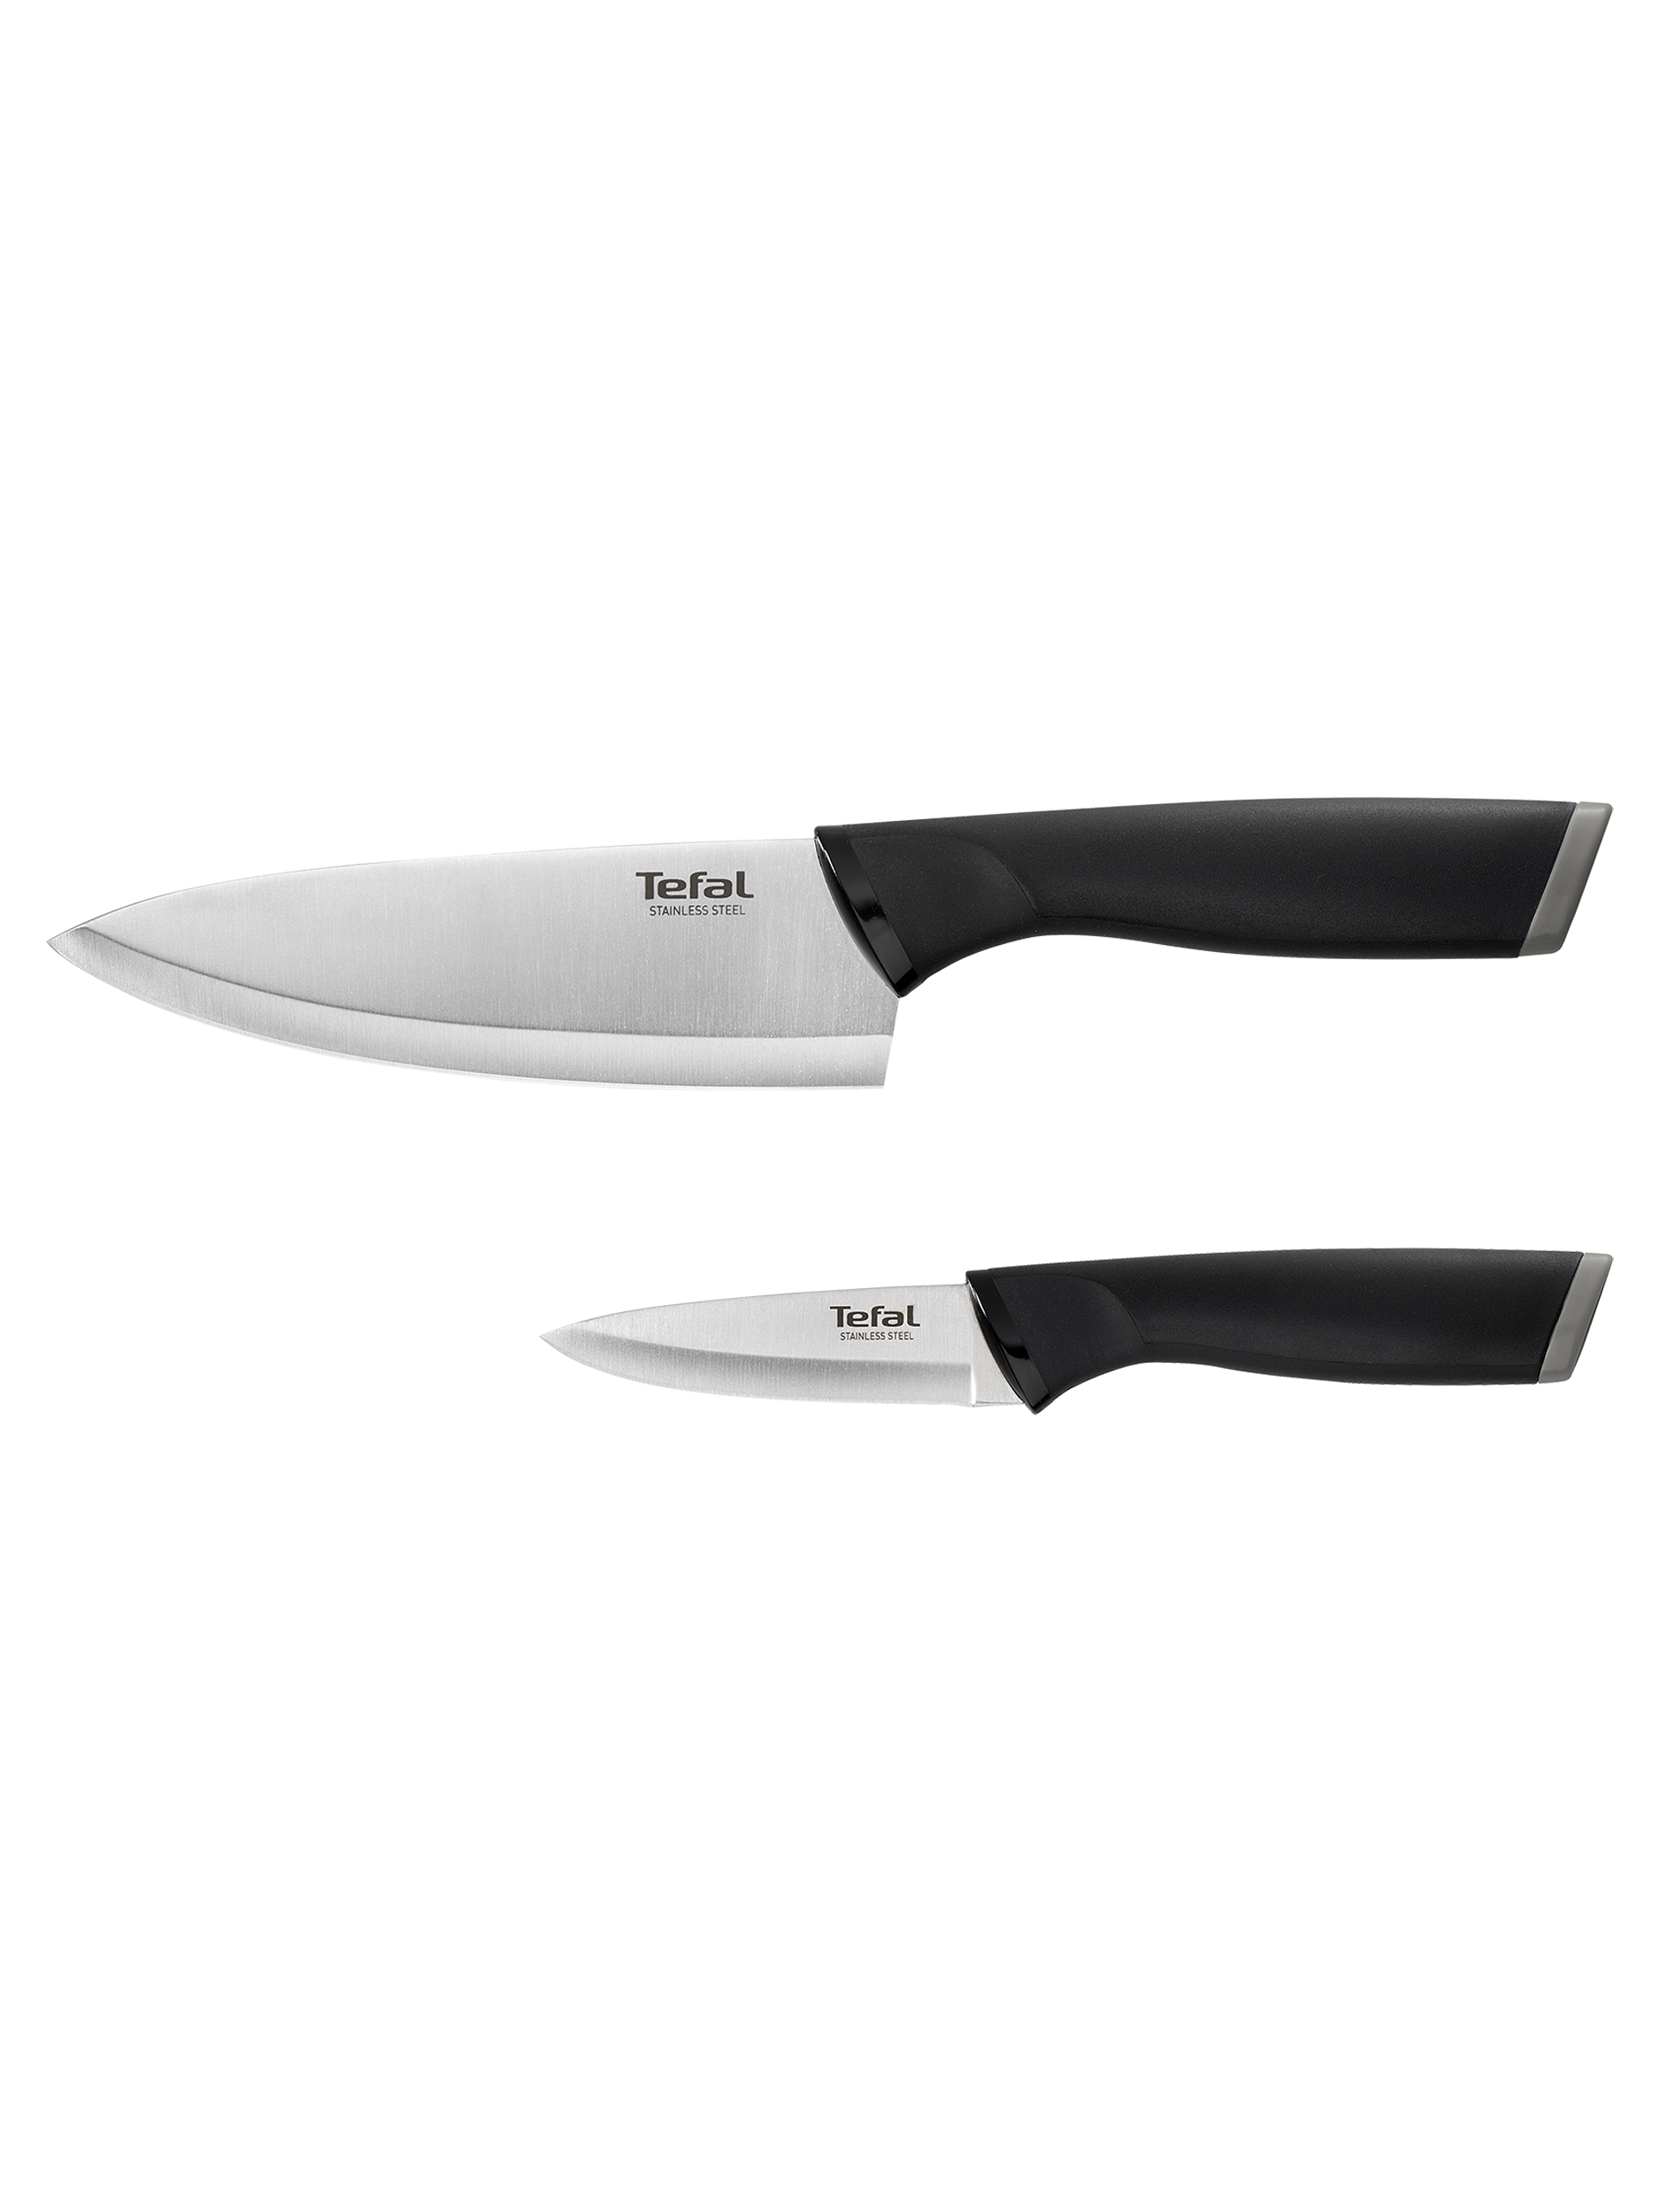 Набор кухонных ножей tefal. Набор ножей Rondell Leistung Rd-1051. Поварской нож Tefal k1210214. Набор ножей Tefal Essential. Набор Tefal Essential k2219355.